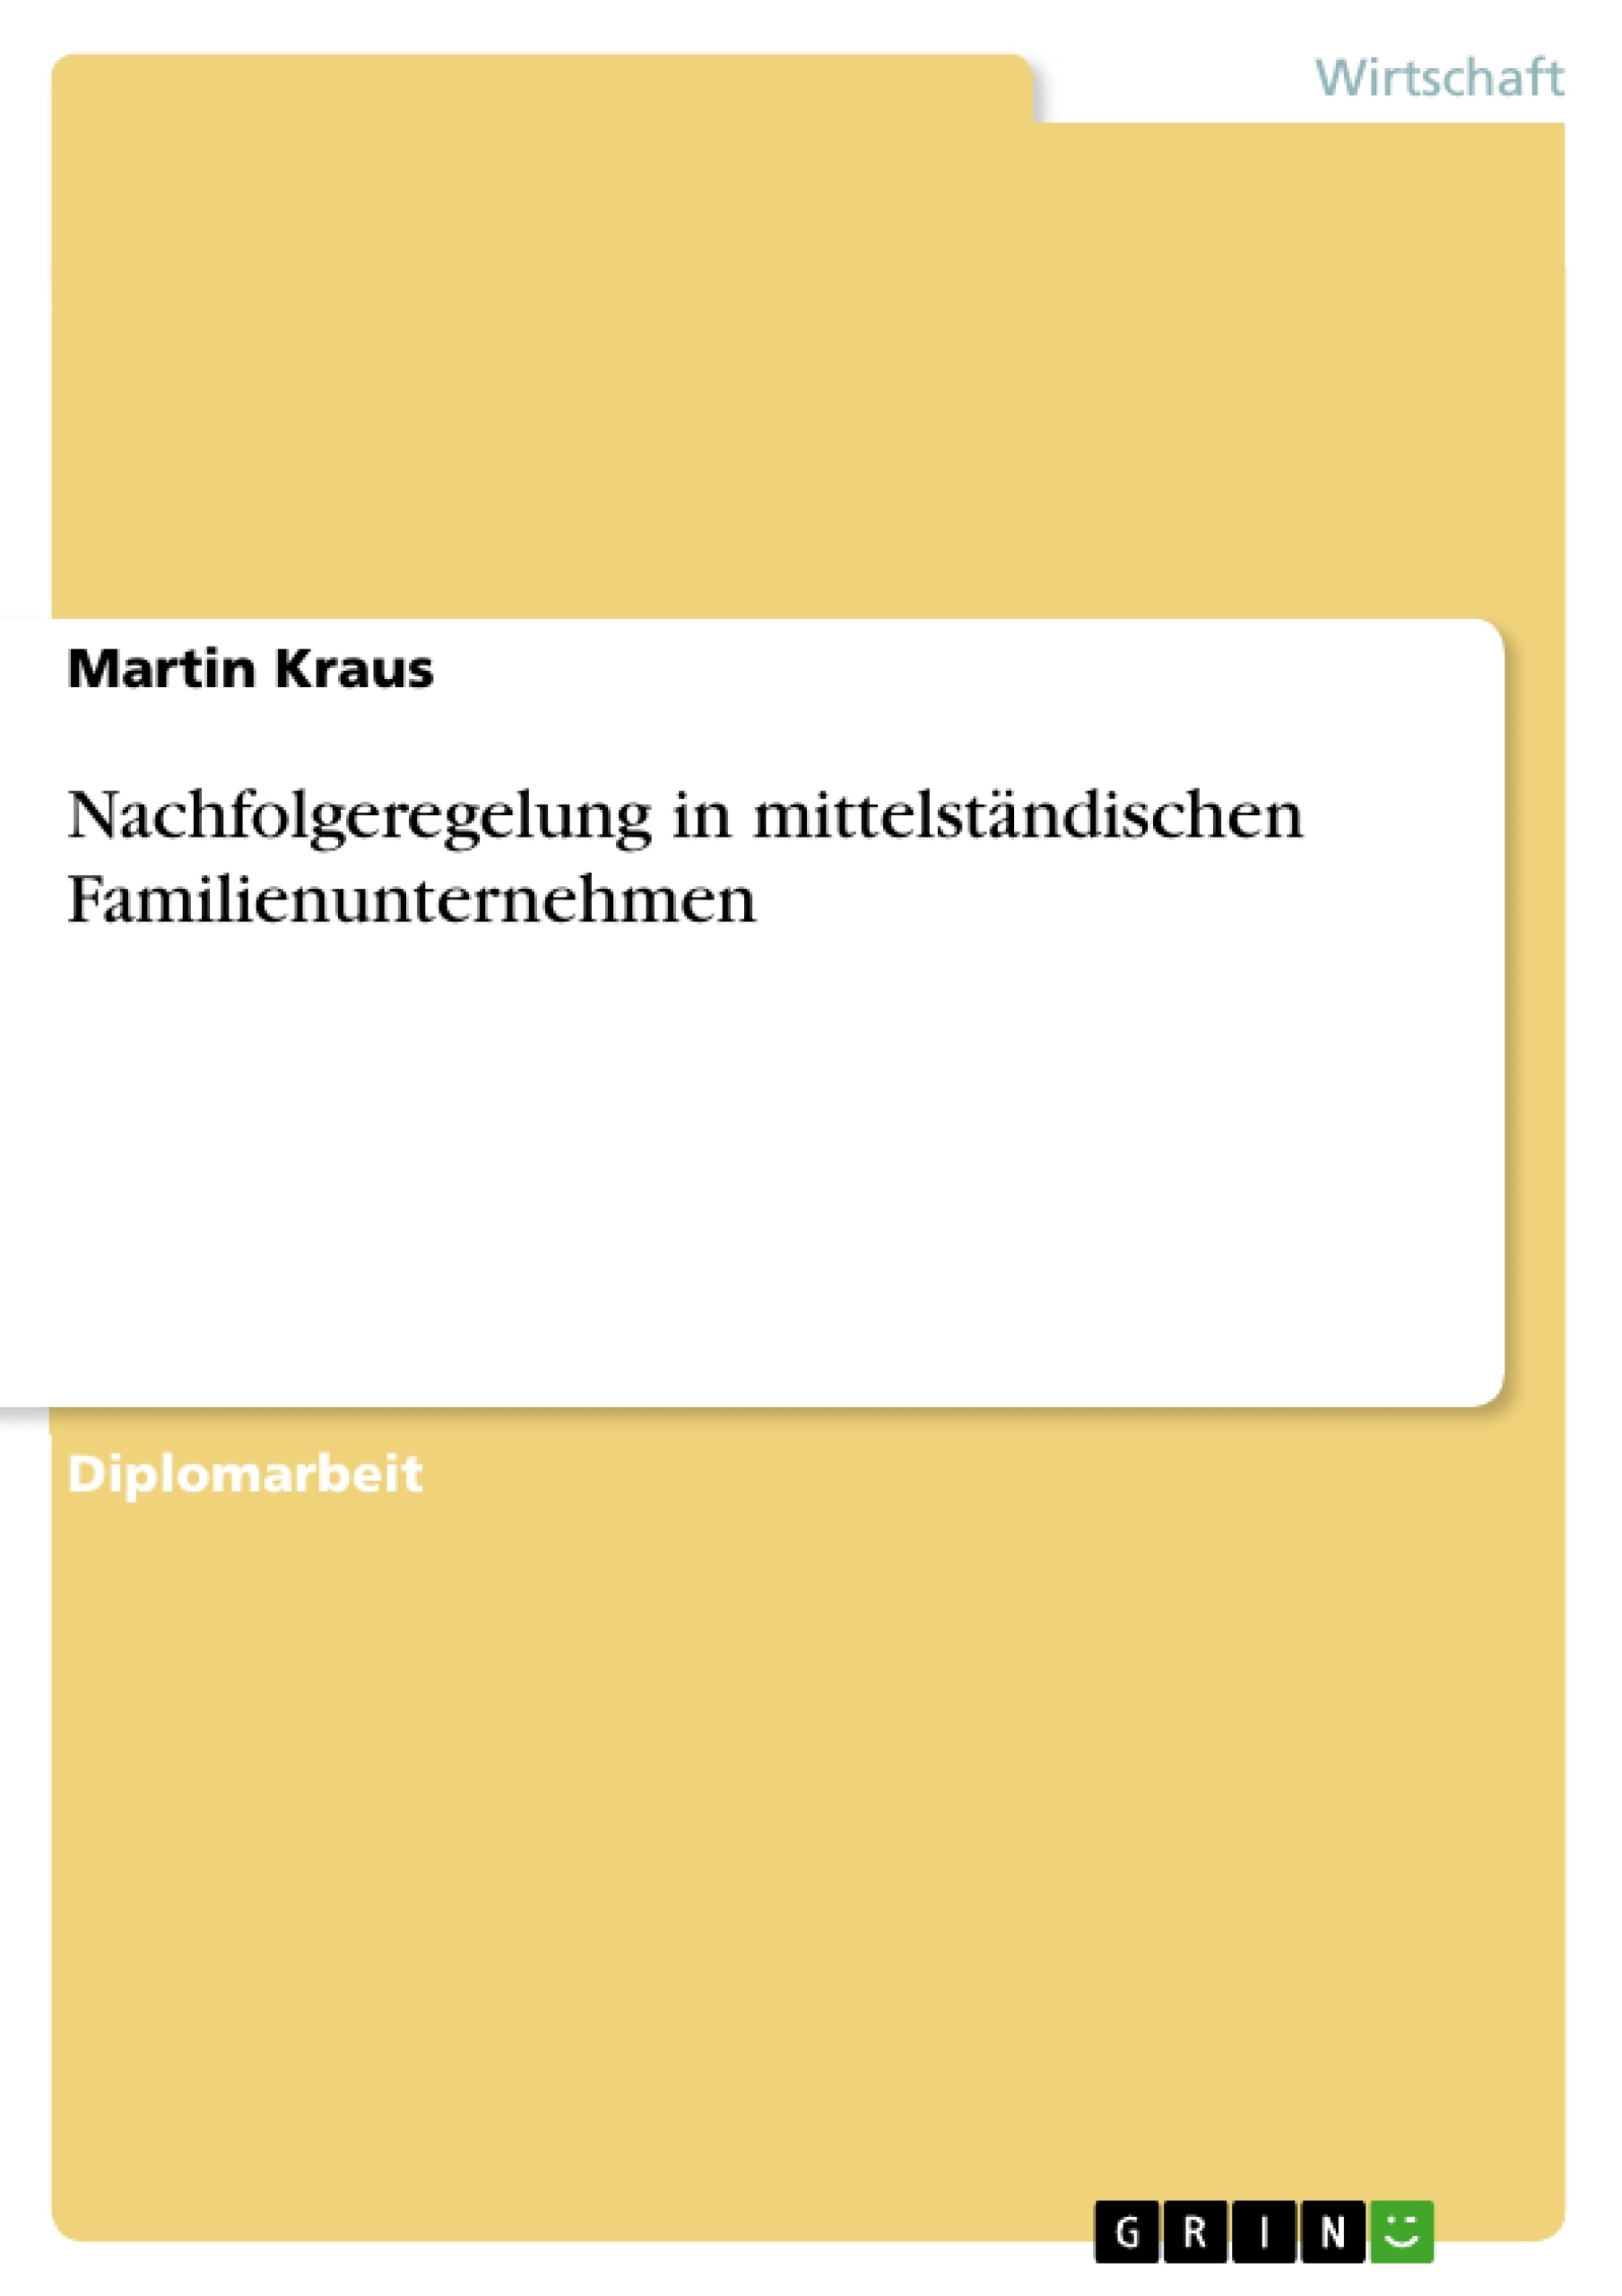 Title: Nachfolgeregelung in mittelständischen Familienunternehmen